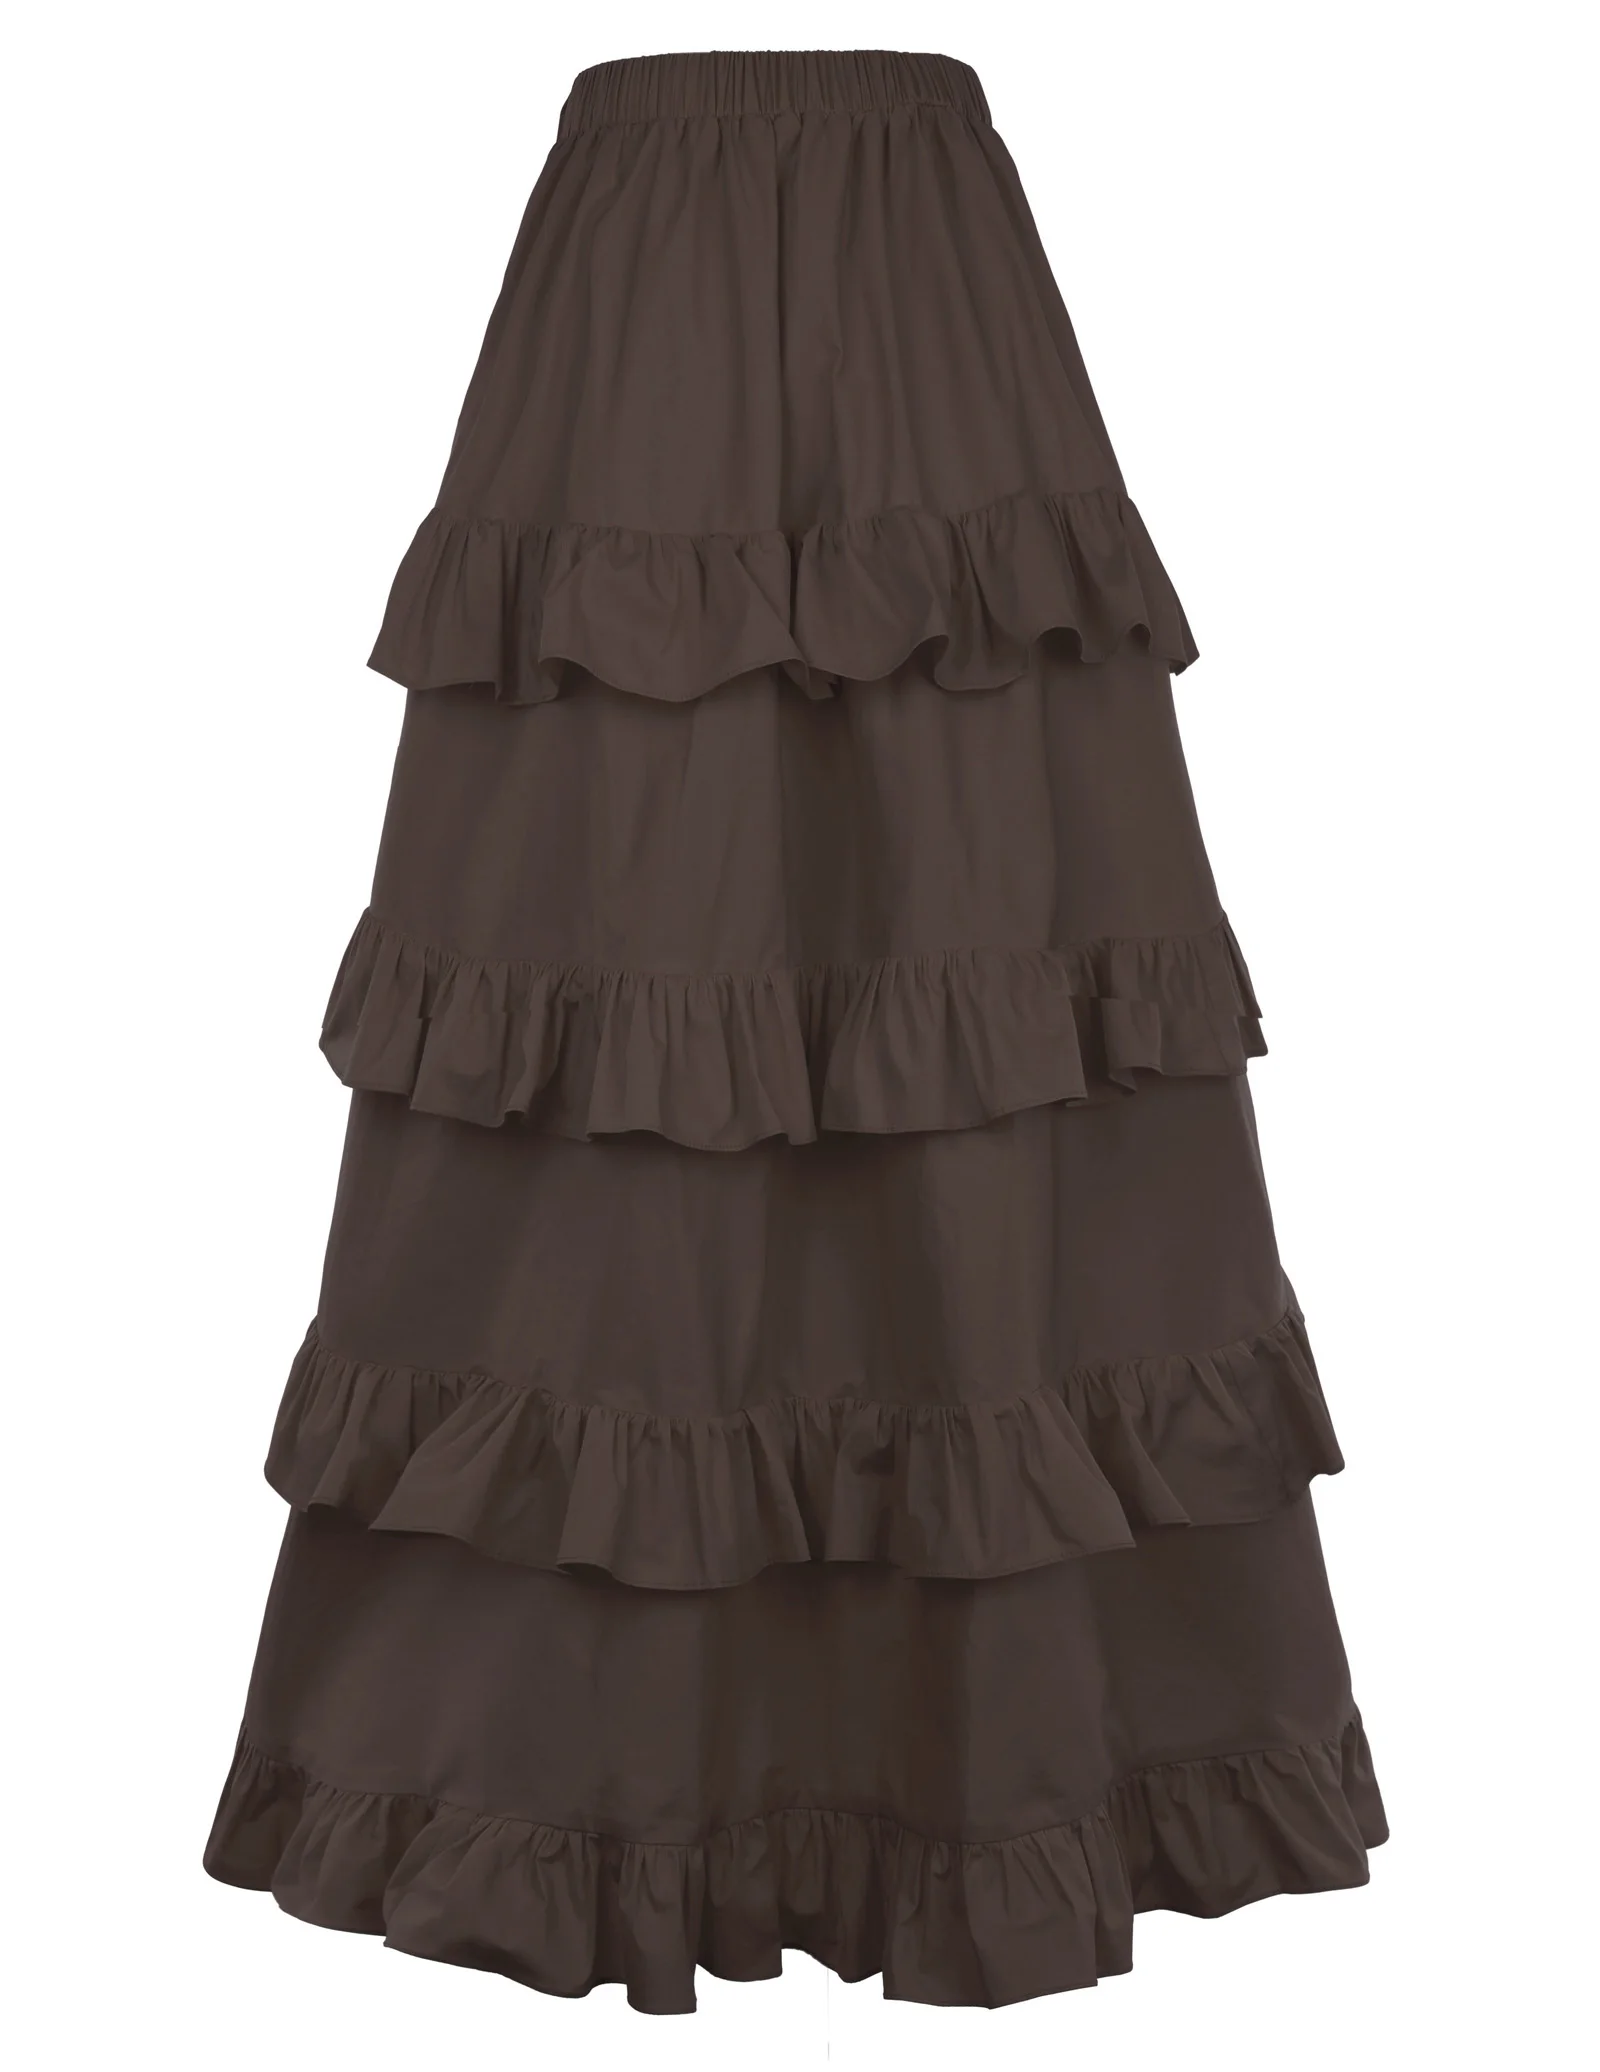 Коричневые Асимметричные тюлевые юбки в готическом стиле с оборками и кружевной отделкой, женская одежда в стиле стимпанк, юбка в викторианском стиле